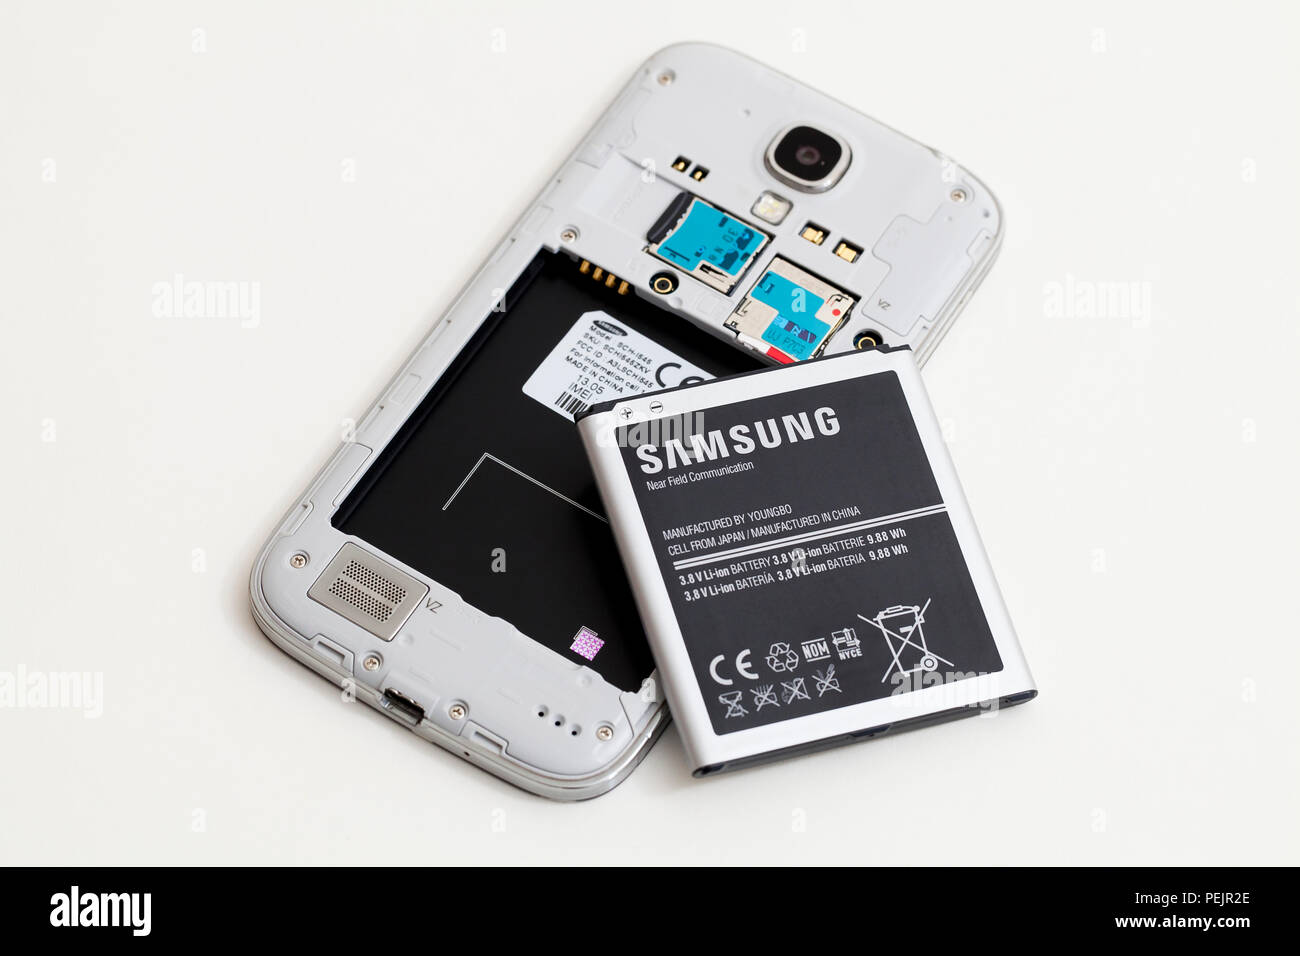 Samsung Galaxy telefono cellulare con coperchio posteriore rimosso, mostrando Samsung batteria - USA Foto Stock